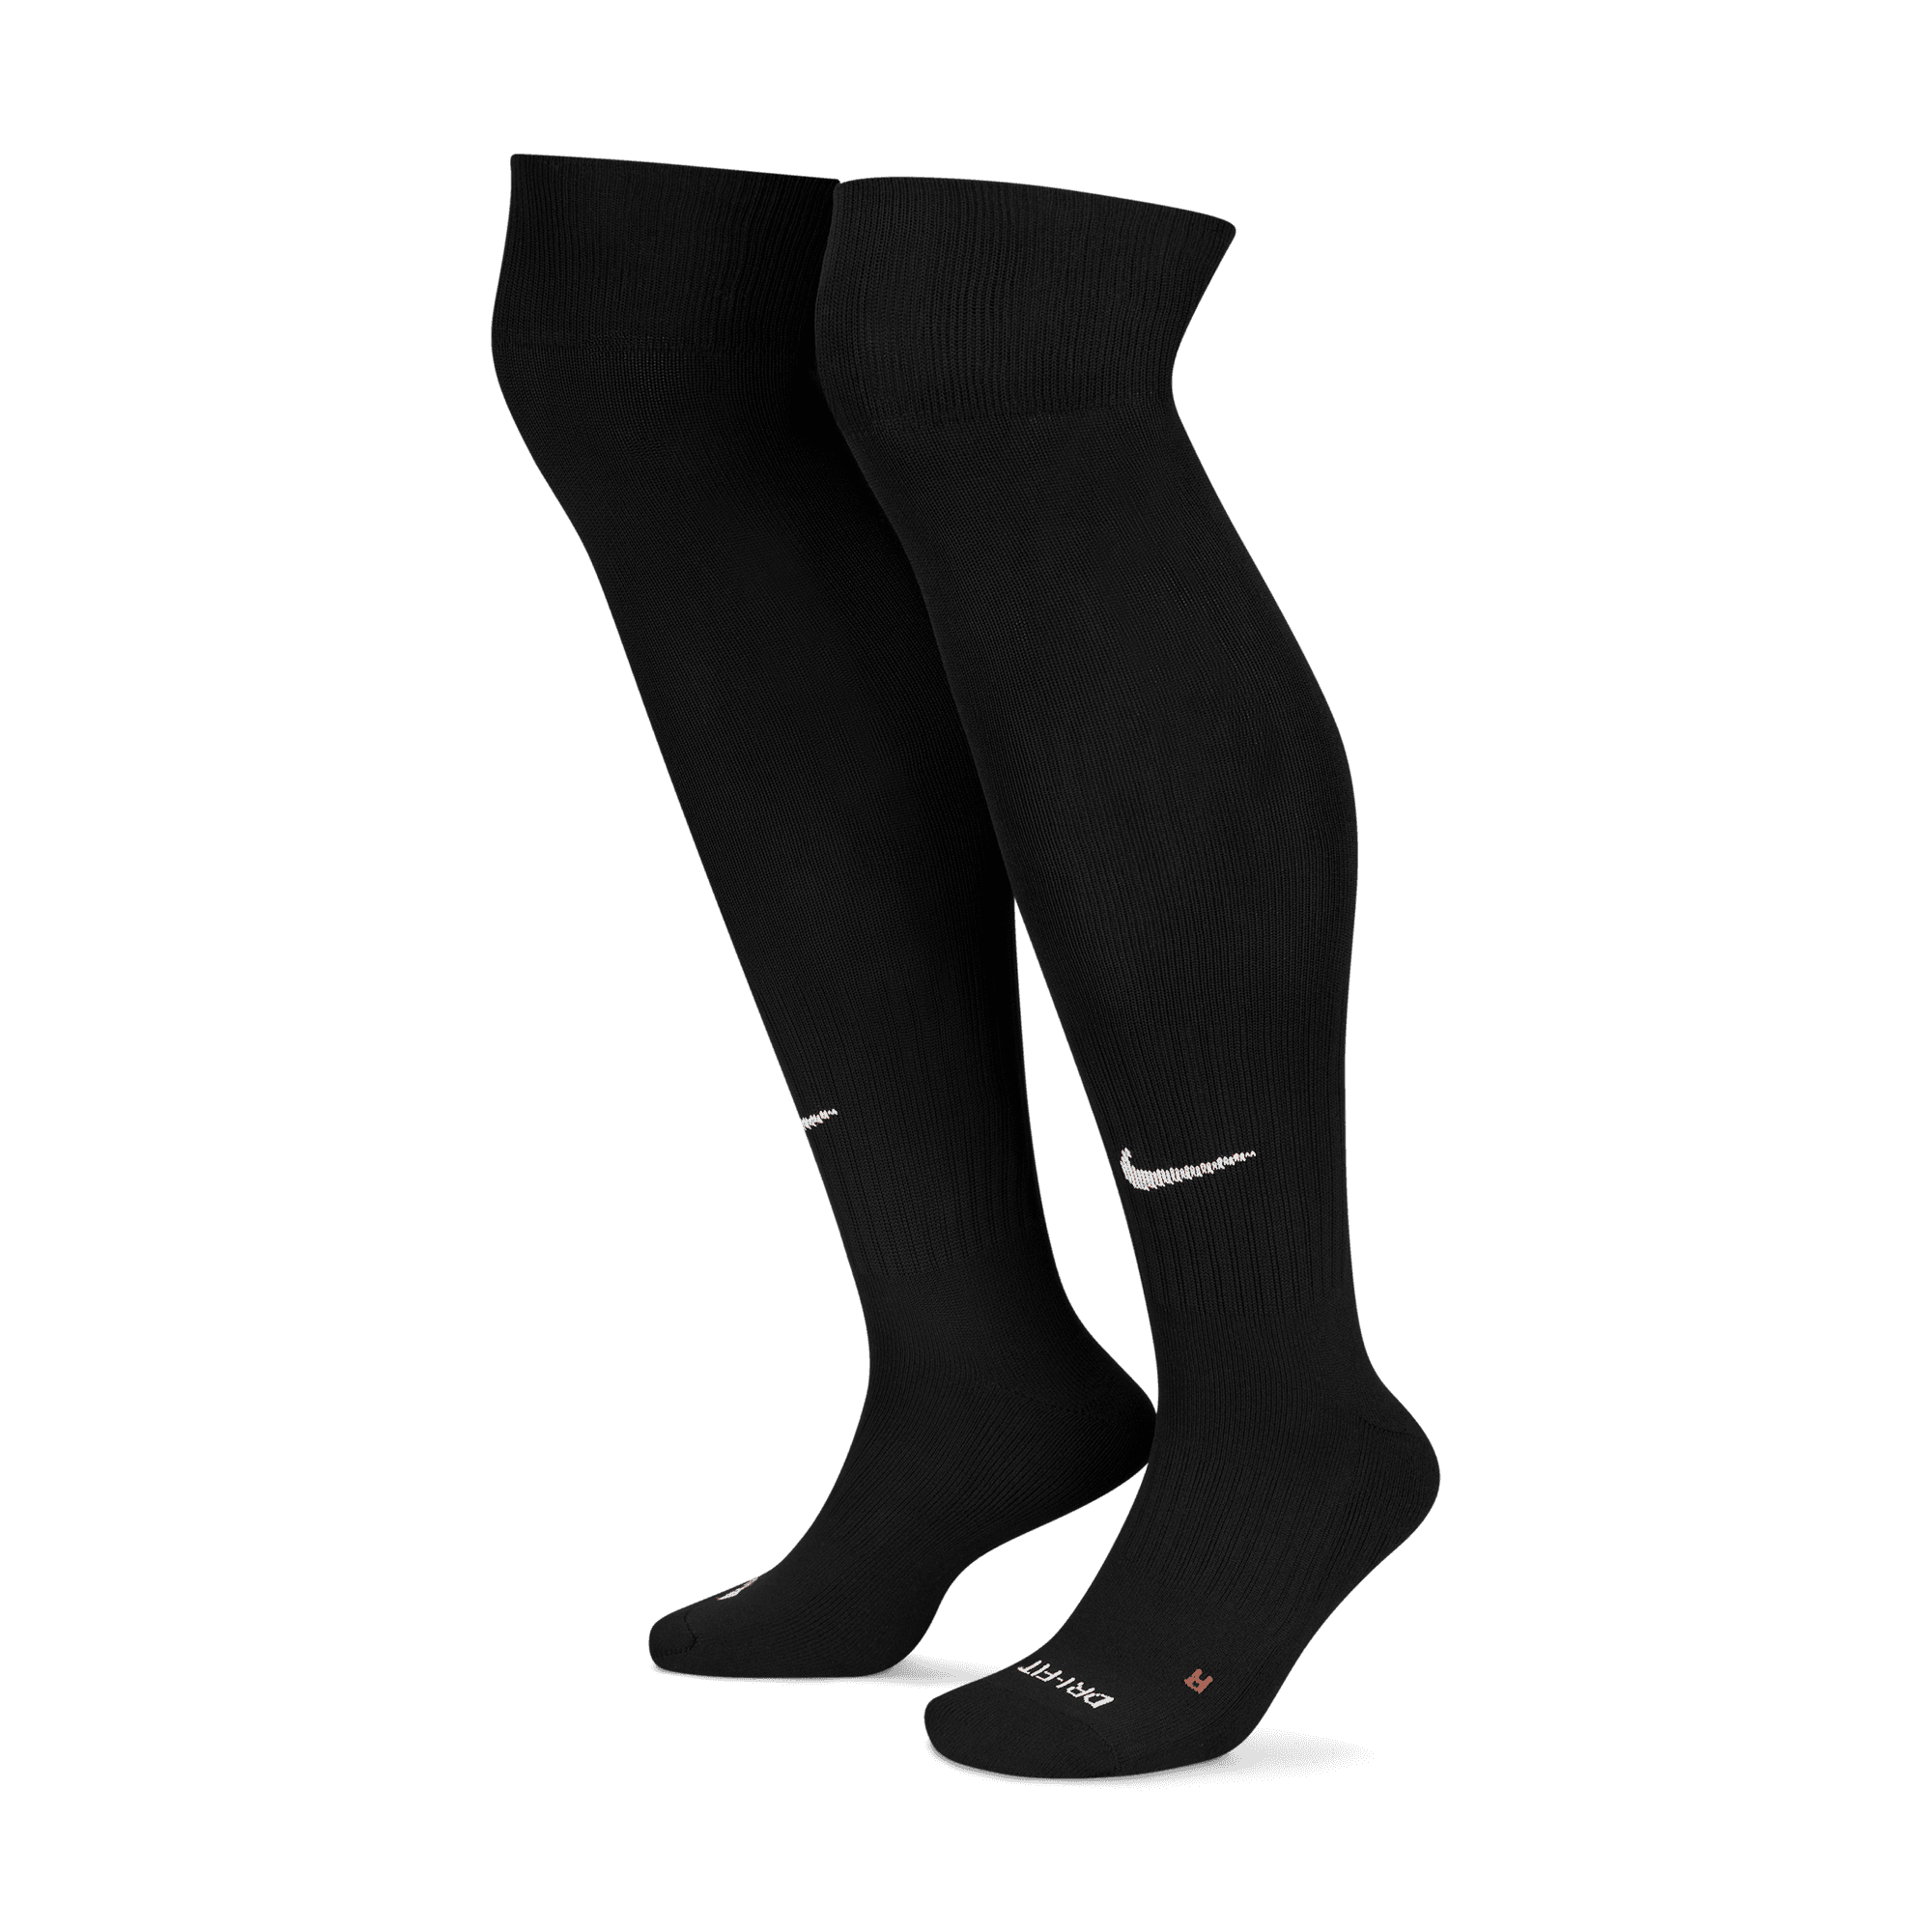 Women's Senior Baseball/Softball Over-the-Calf Sock (2 Pack) from Nike ...